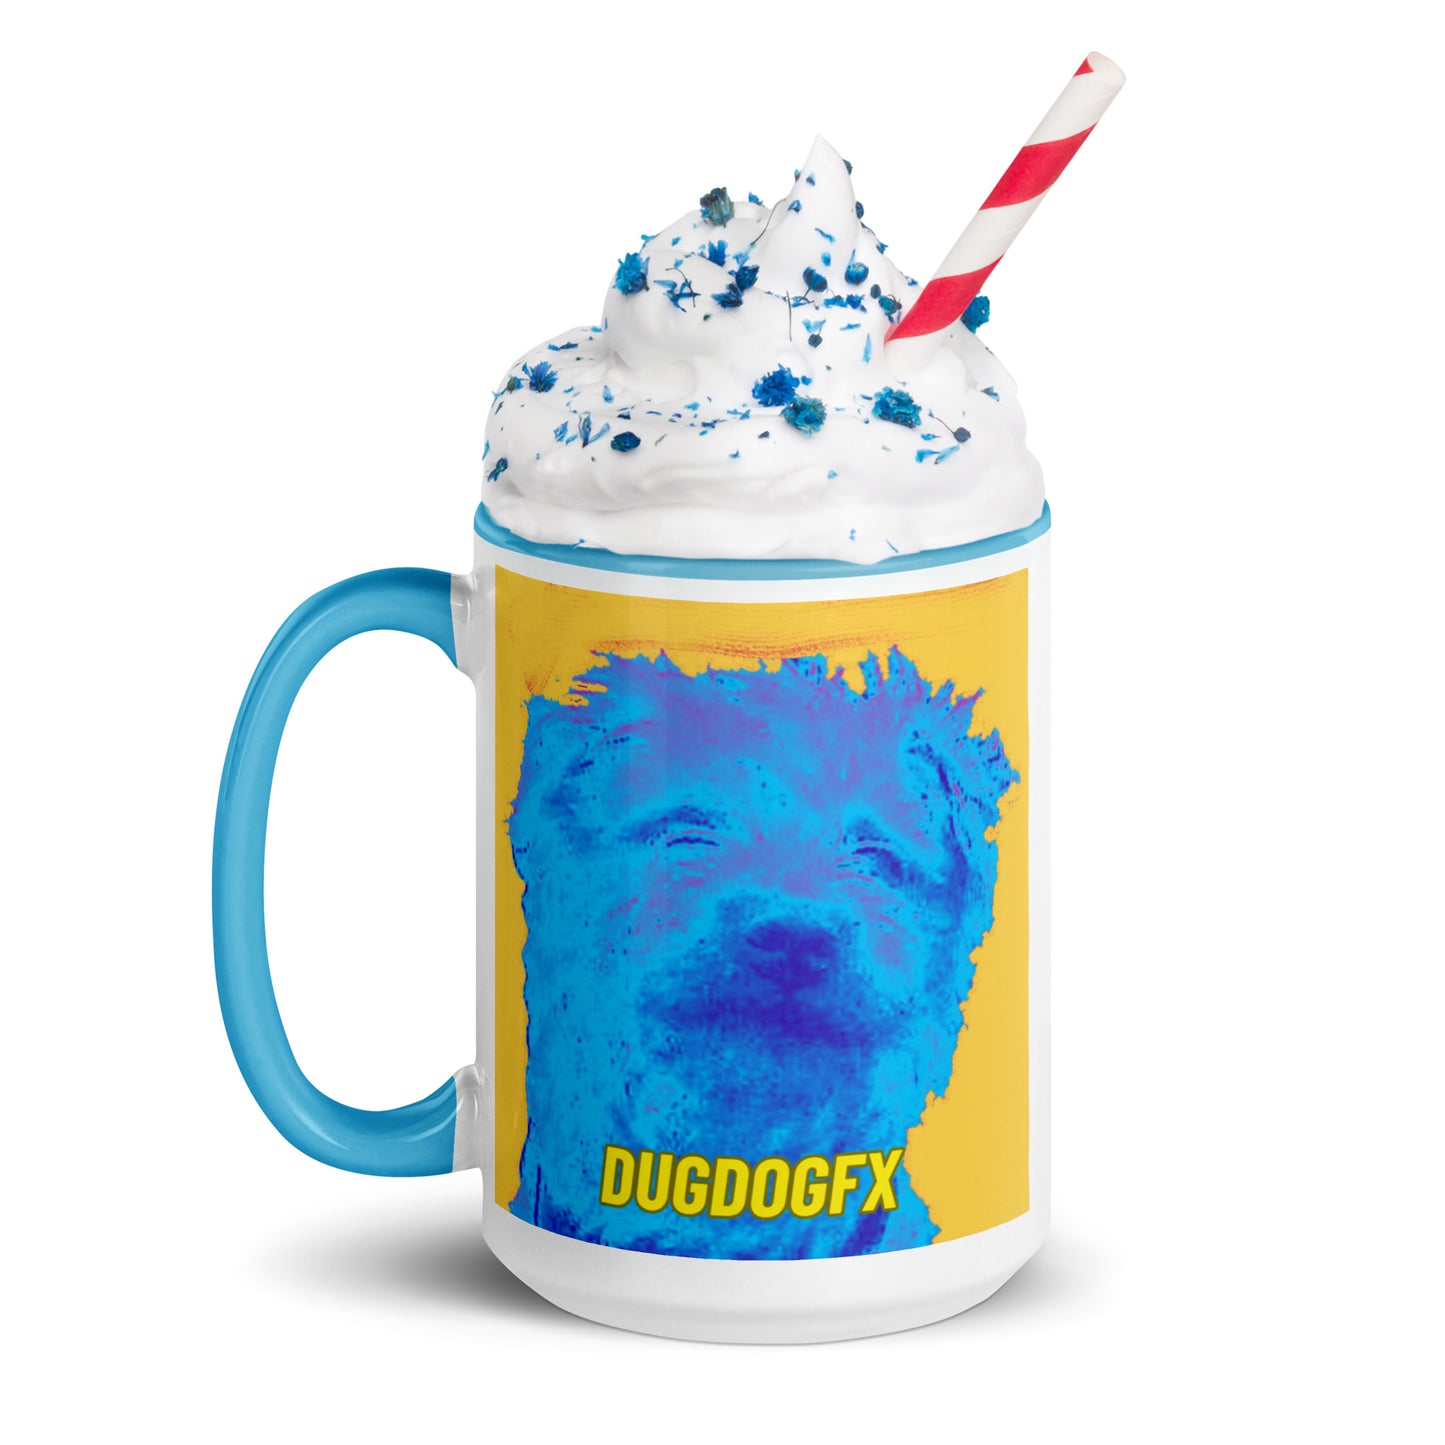 DugDogFX Logo Mug With Color Inside